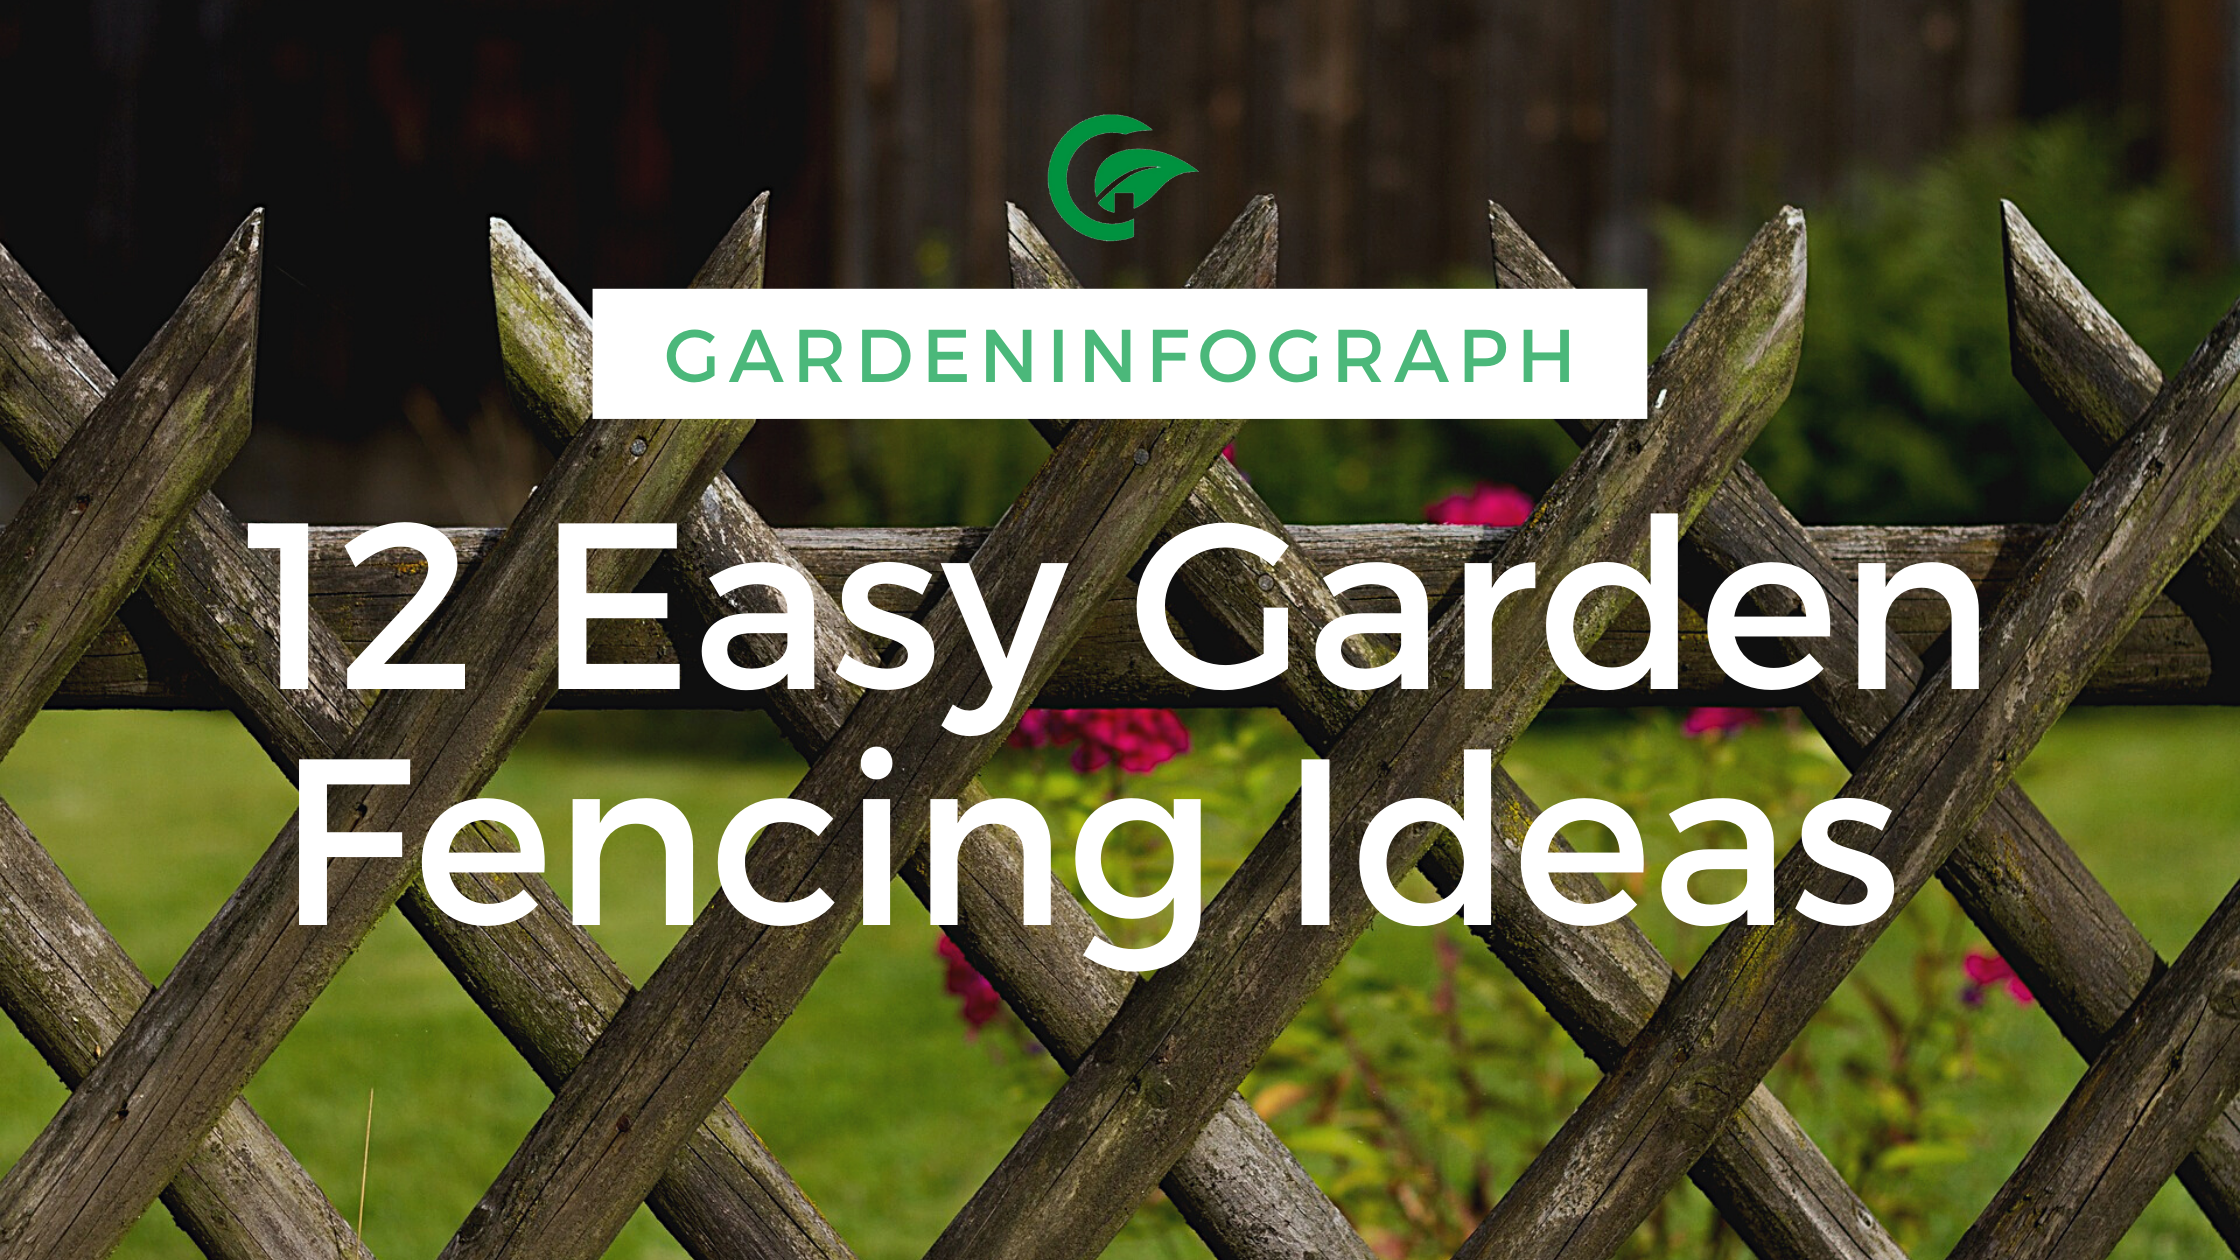 12 easy garden fencing ideas